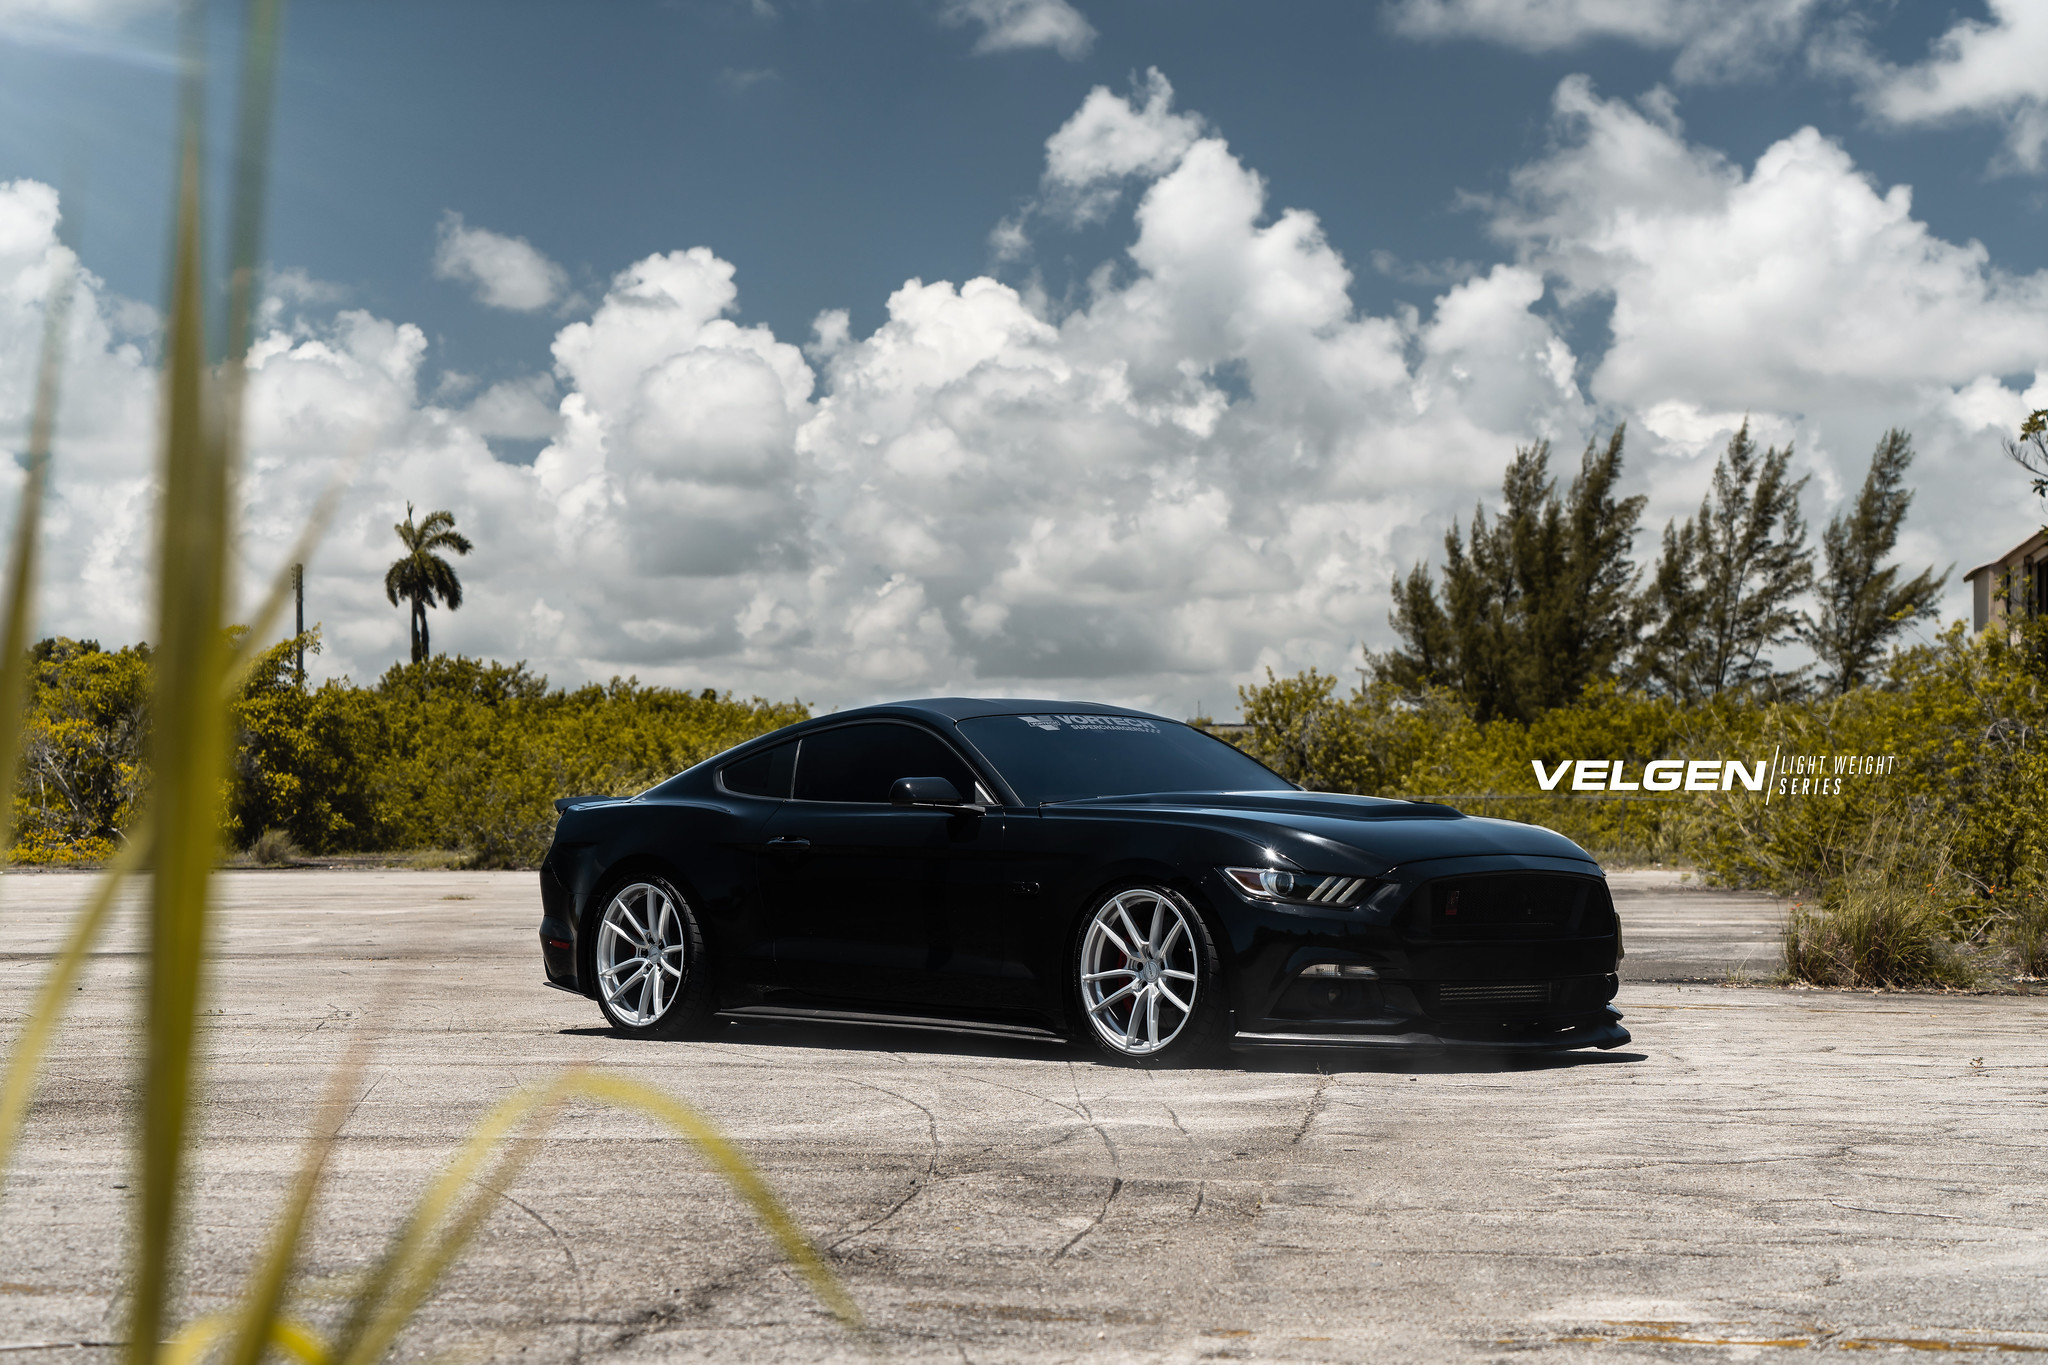 S650 Mustang Velgen wheels for your S650 Mustang | Vibe Motorsports 48350522727_1229d9ee46_k